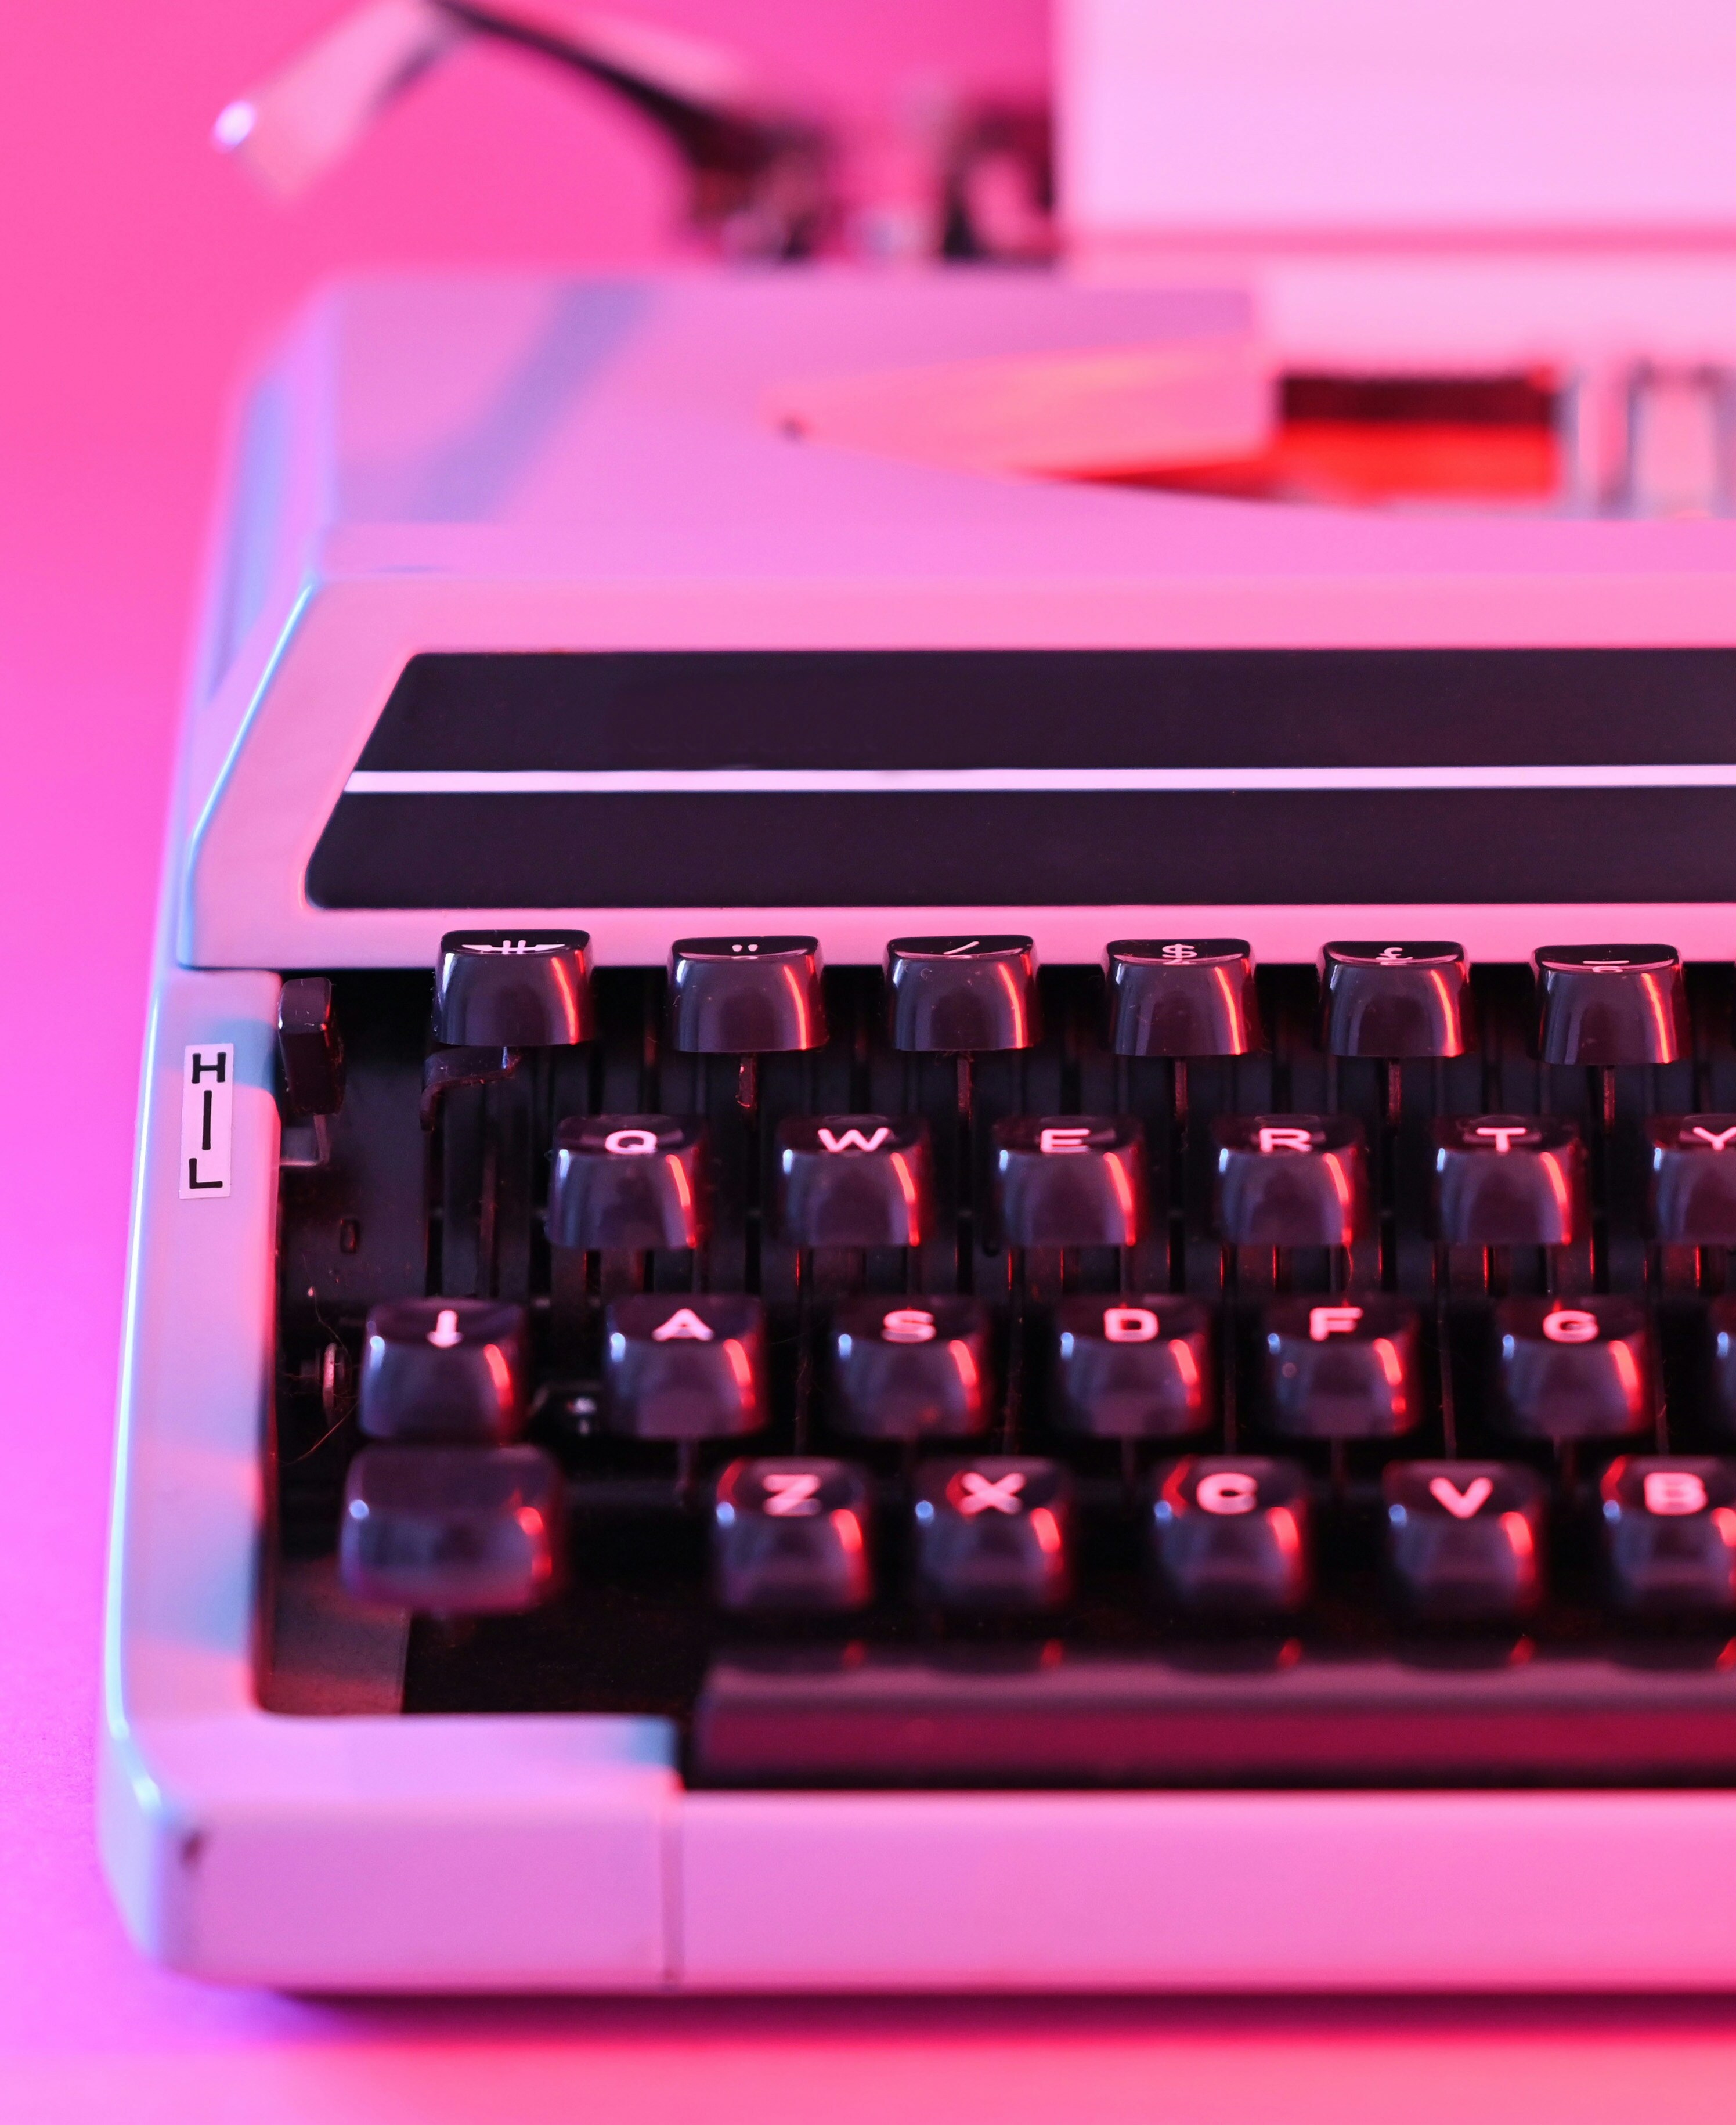 typewriter glowing in pink